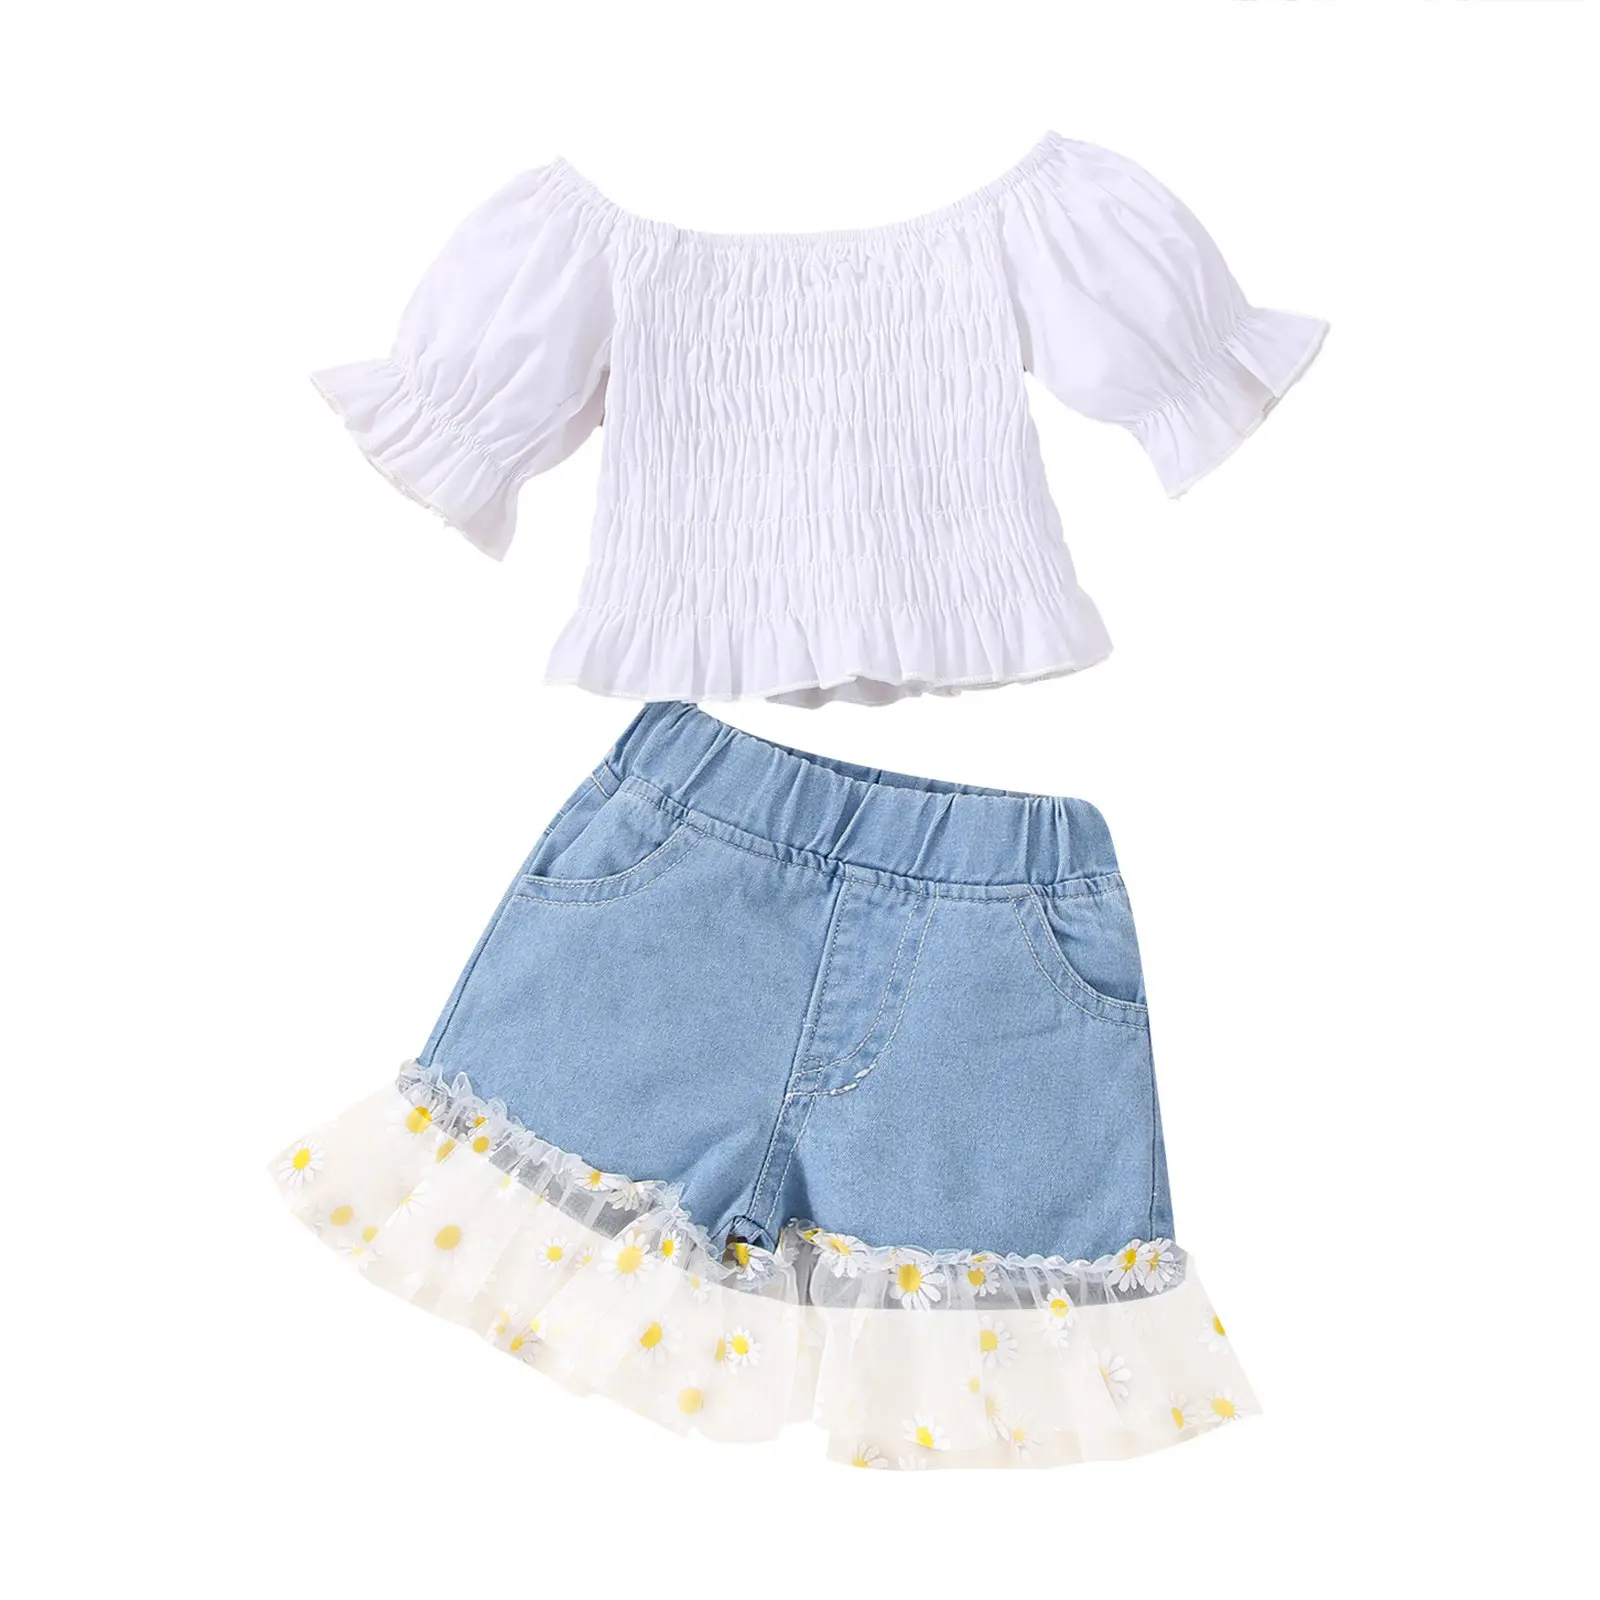 Lzh roupas infantis para meninas, para o verão, ombro fora, plissada, malha, duas peças, 6m-4y